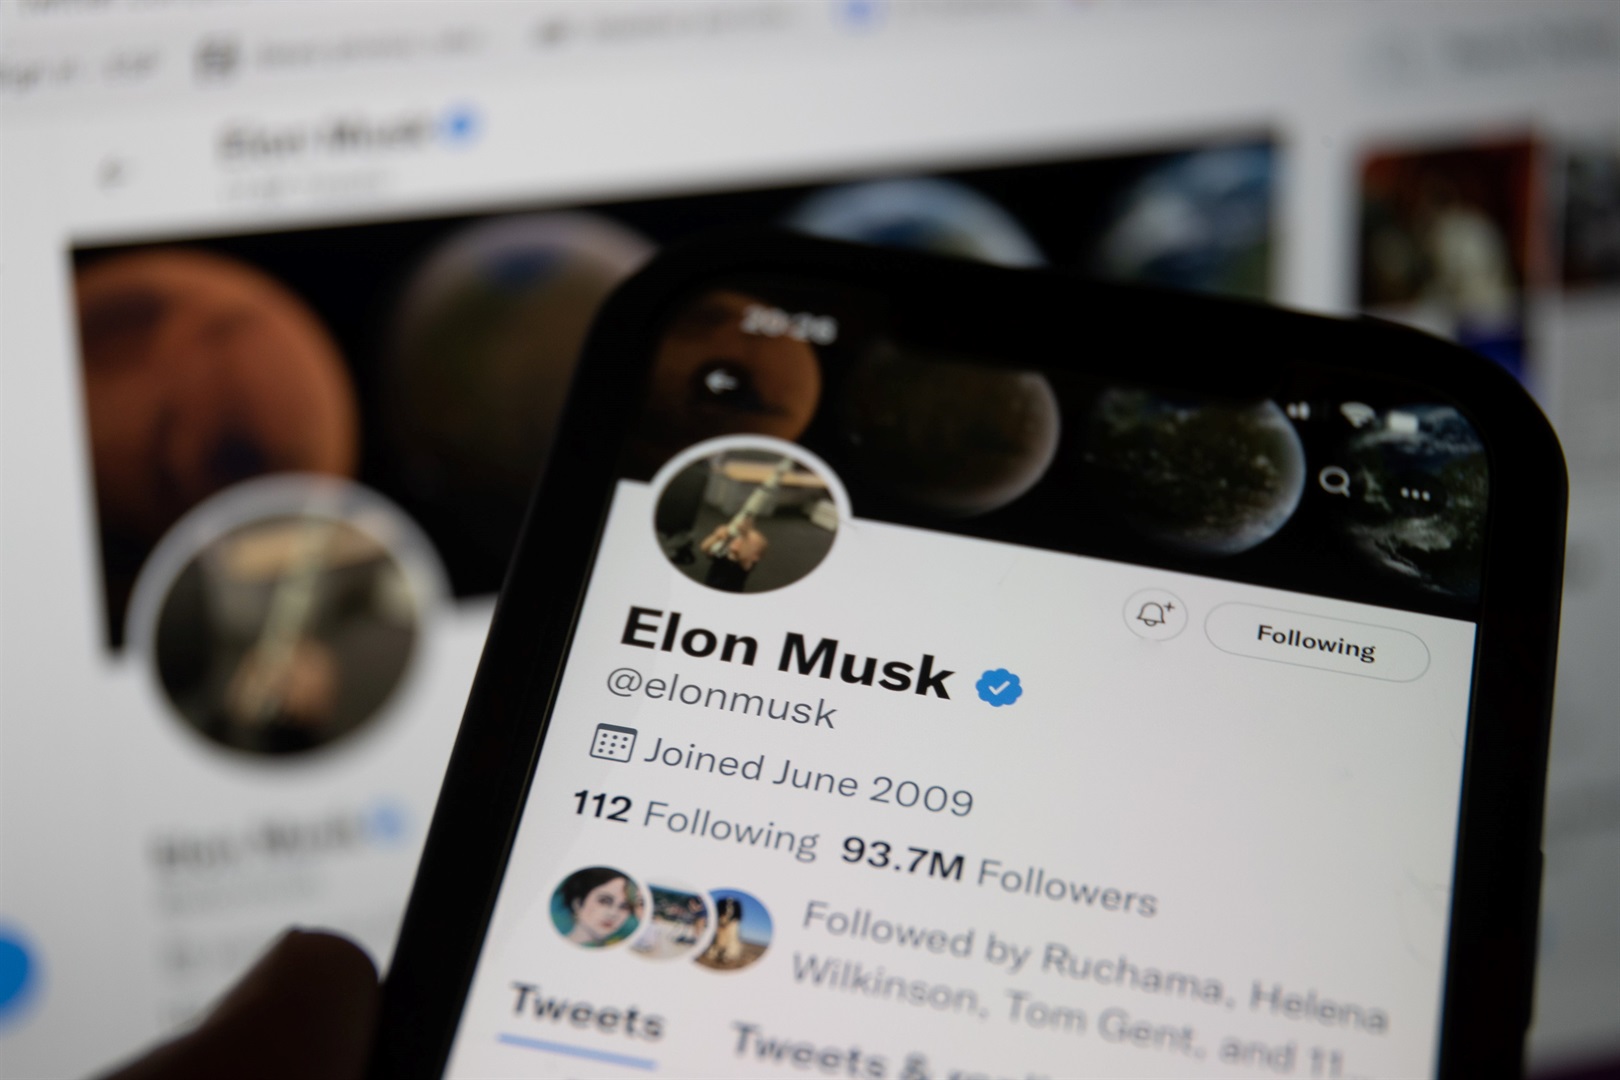 Elon Musk'ın Twitter vizyonu, kullanıcıların rahatsız edici yorumları engelleyen ayarı açmasına izin vermeyi içeriyor